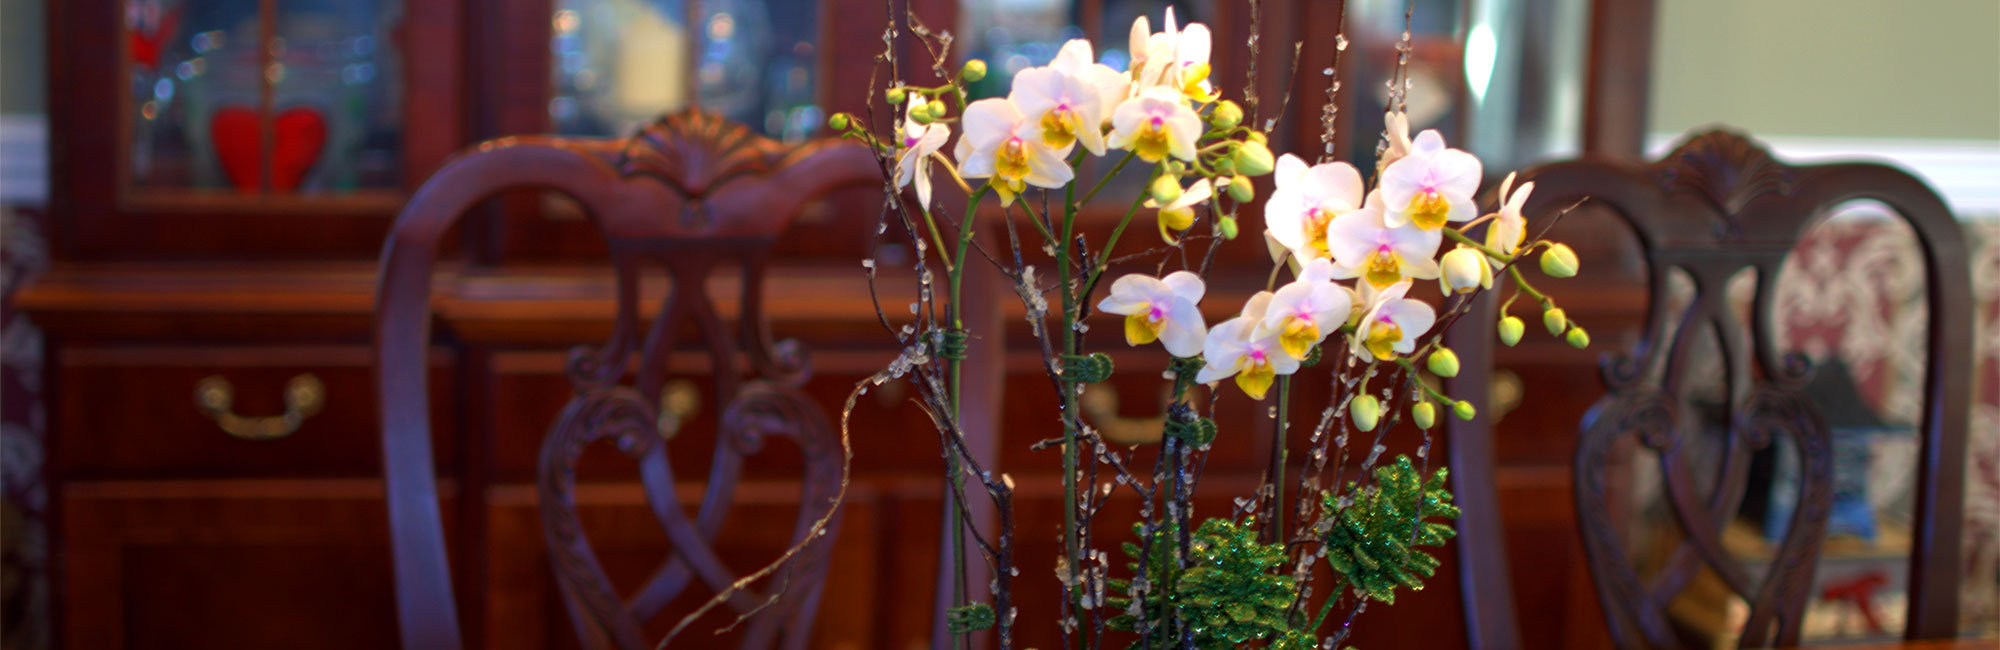 plainview-pure-orchids-pompton-plains-new-jersey-lifestyle